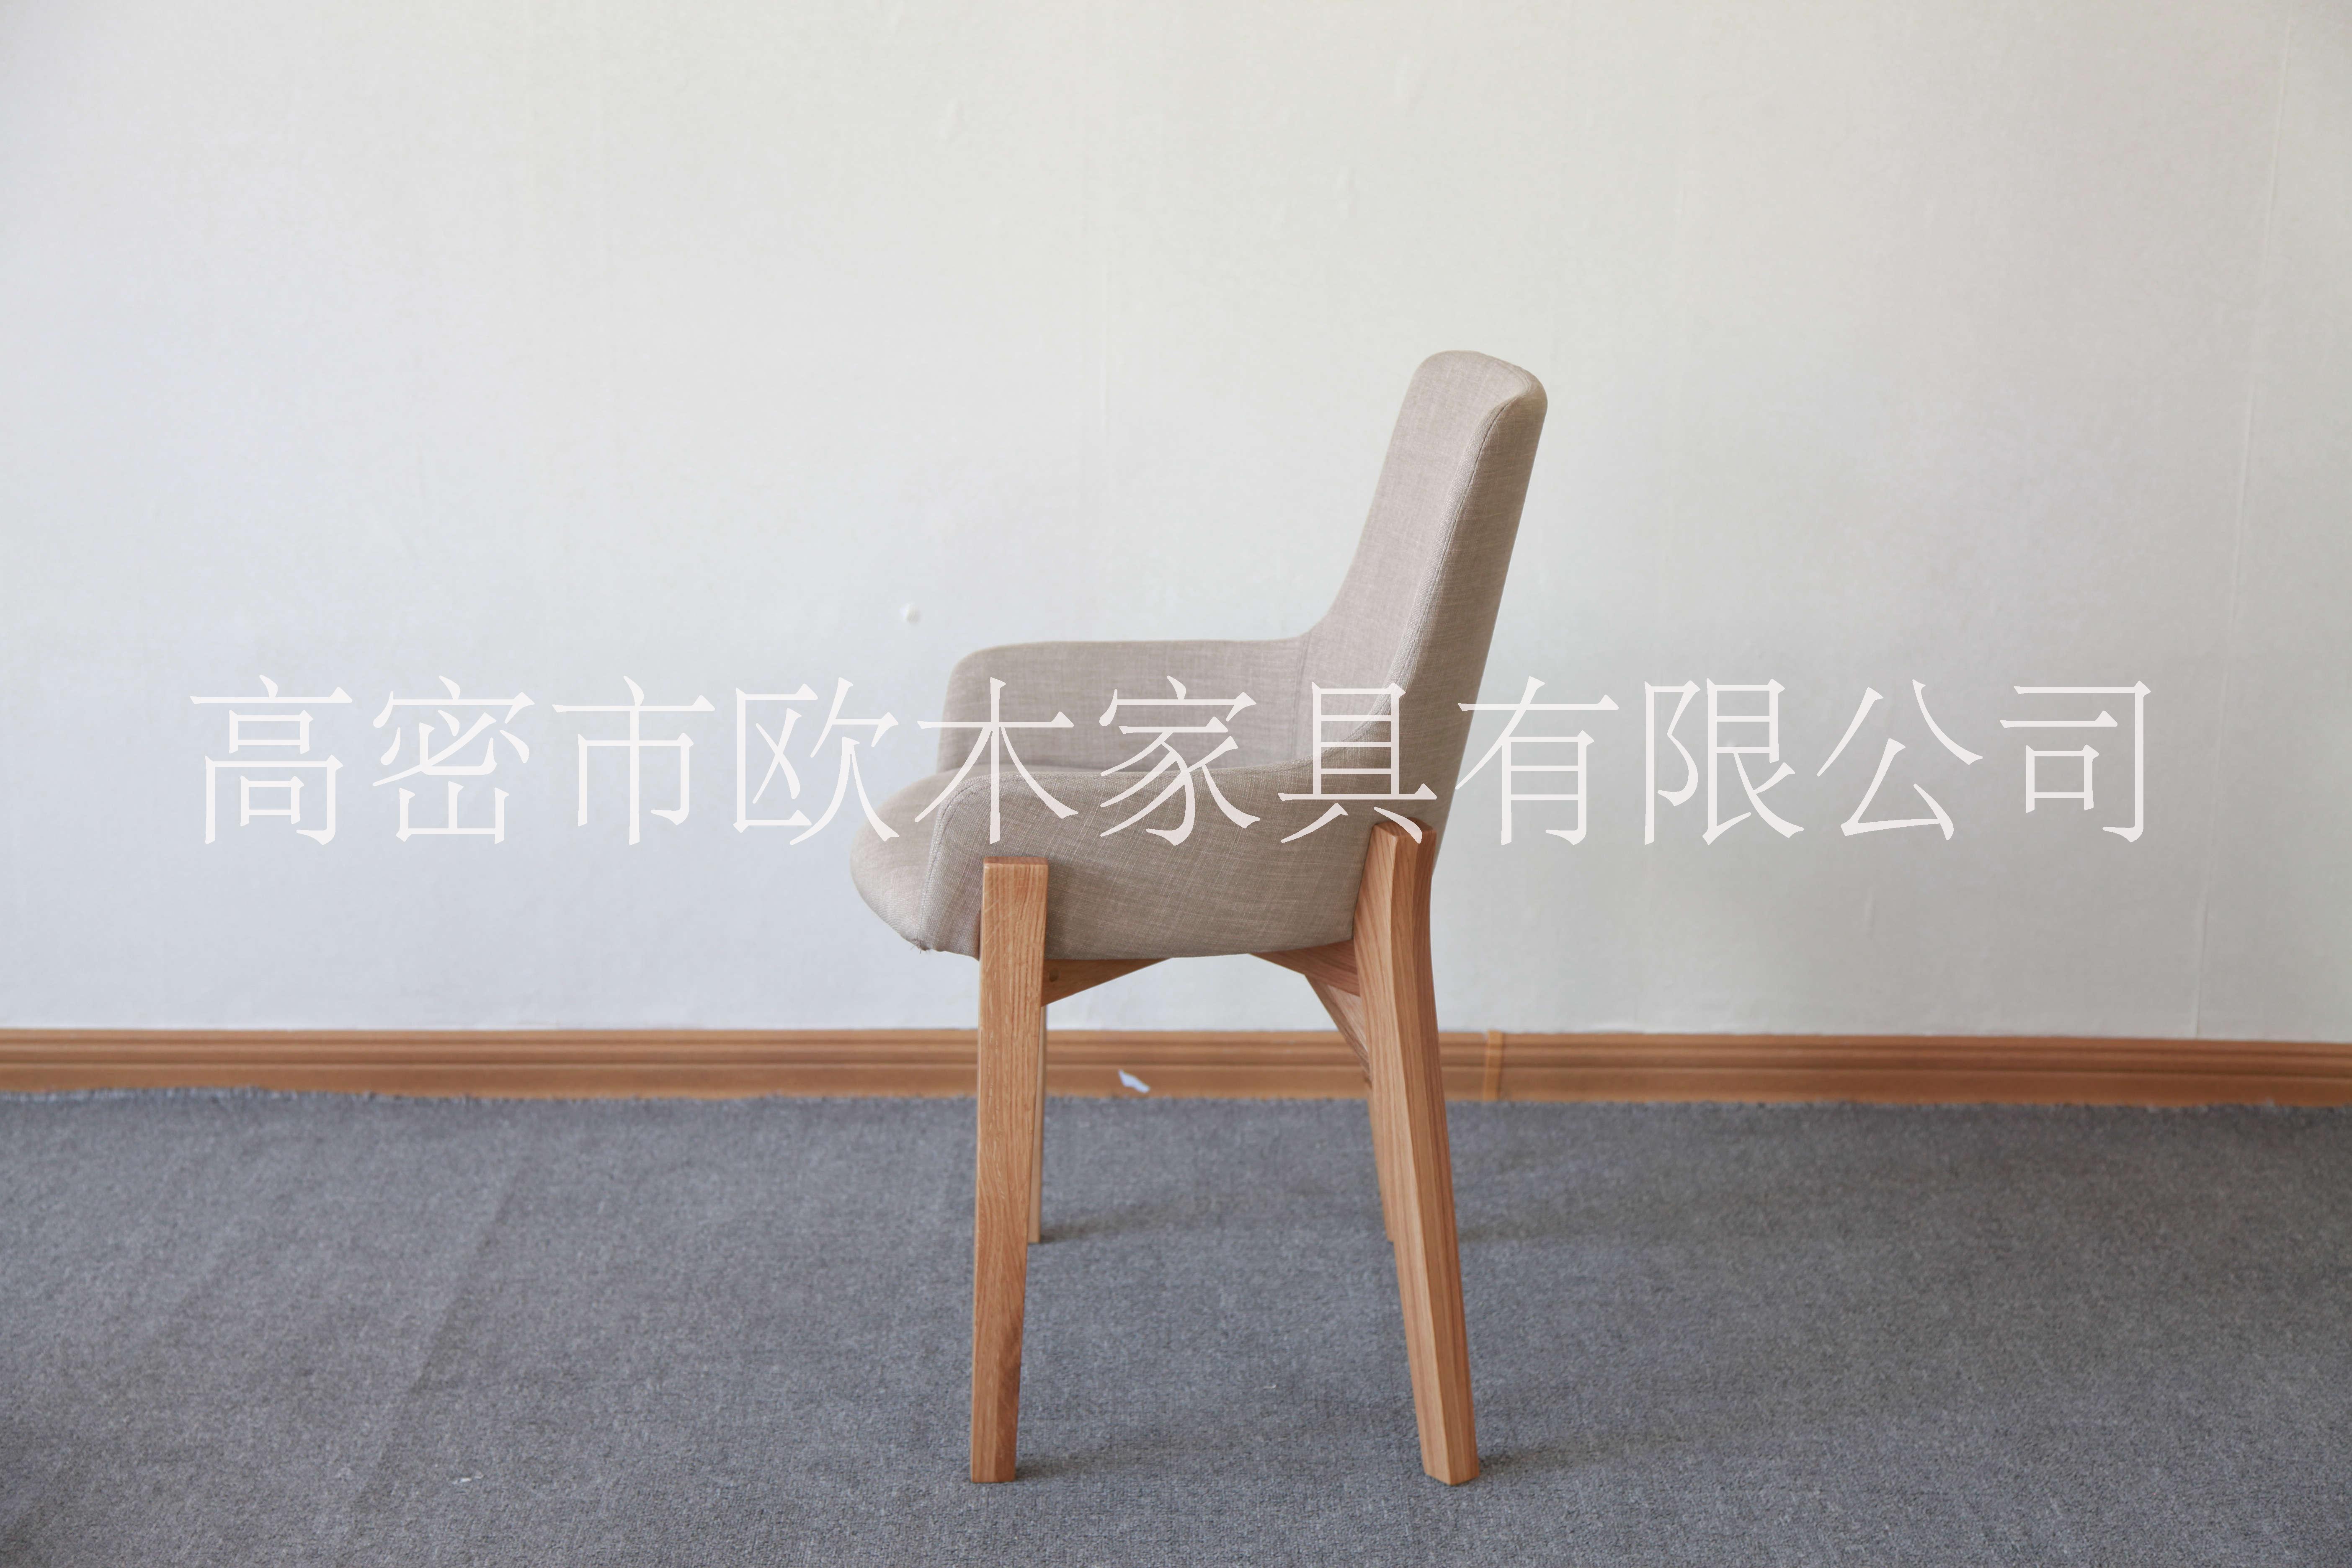 潍坊市索罗椅厂家实木休闲椅酒店靠背索罗椅洽谈办公椅子家具简约实木餐椅书房电脑椅